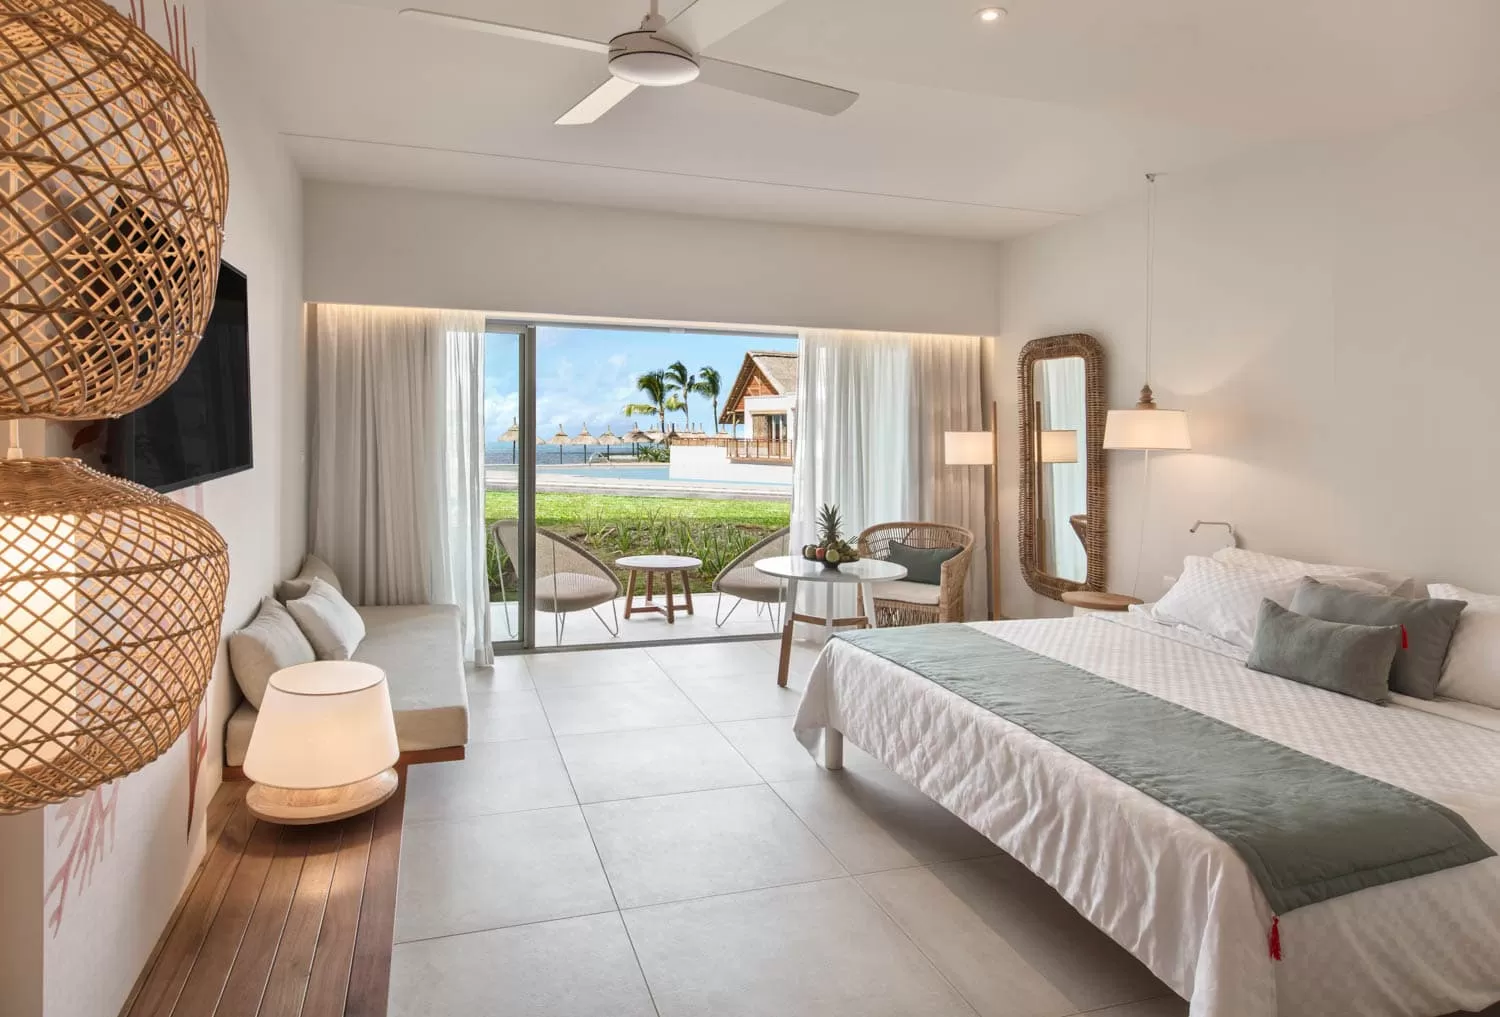 preskil-island-resort | noudeal.com - Preskil Island Resort - luxury hotel room with ocean view